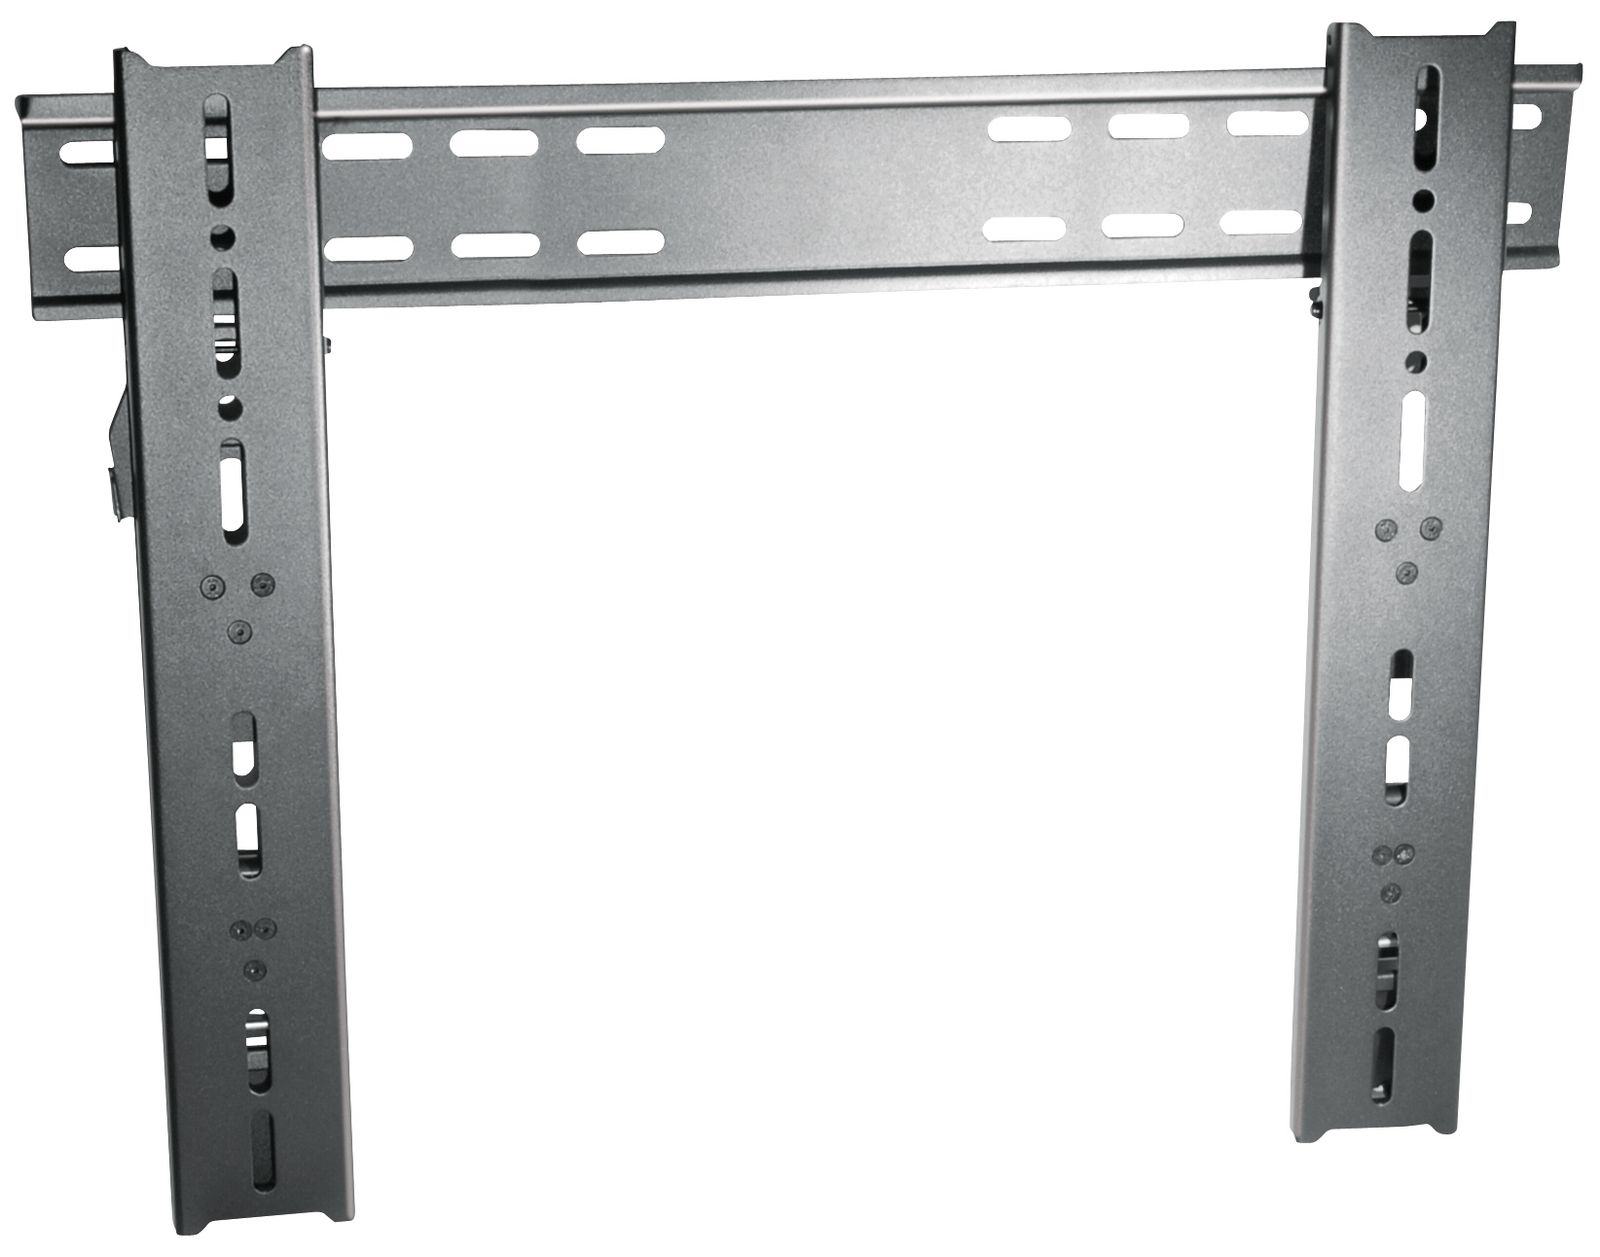 Wandhalter für Flachbildschirm My Wall HP15-2 für Bildschirme 32" - 60" (81-152cm)trägt bis zu 45kg schwarz